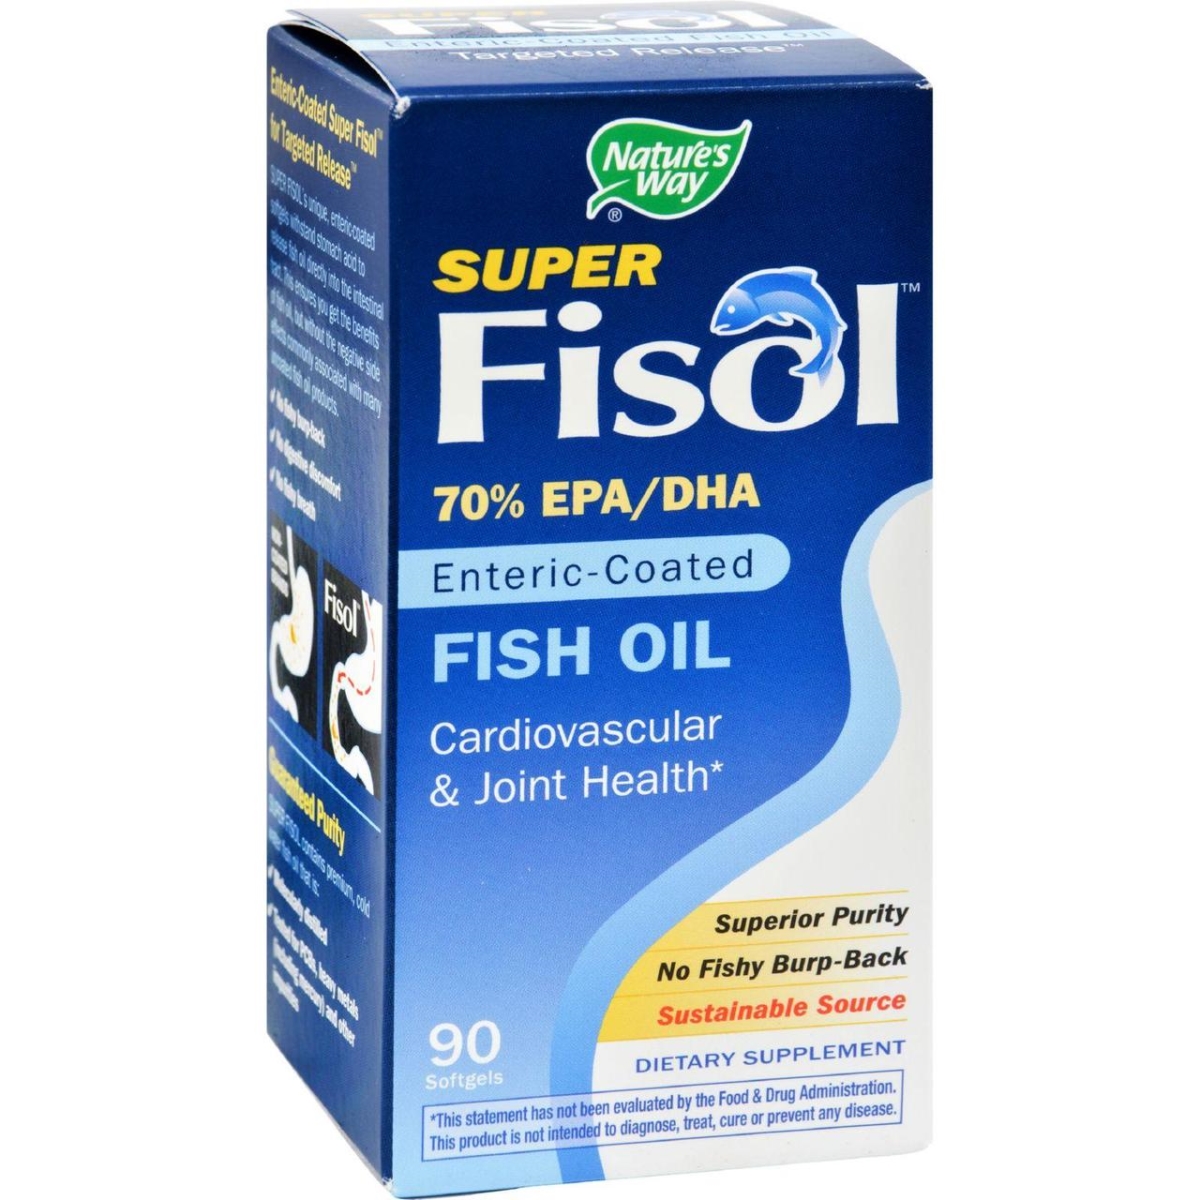 Hg0783639 Super Fisol Fish Oil - 90 Softgels